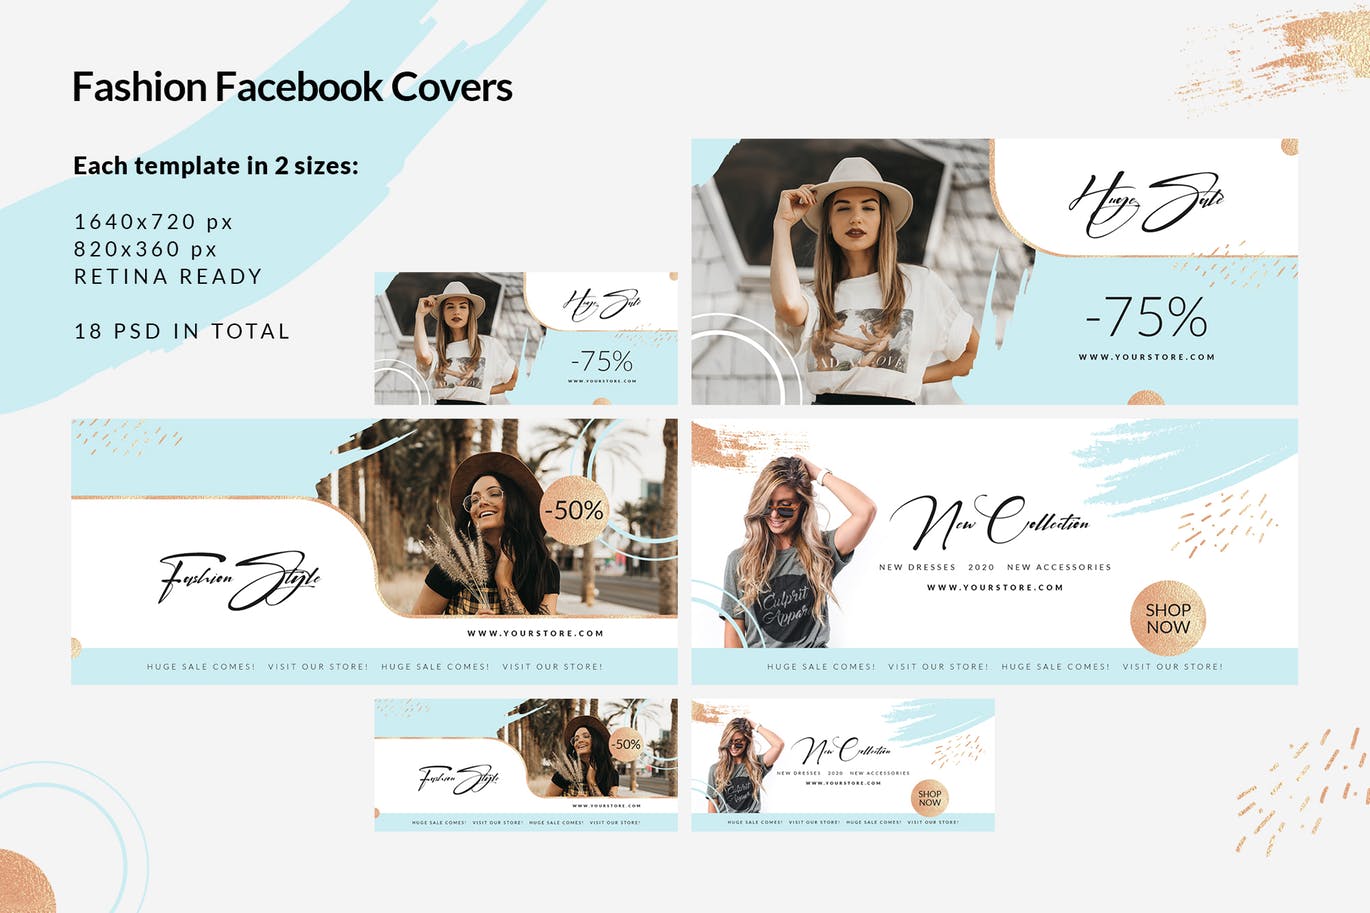 时尚品牌打折促销Facebook封面设计模板素材库精选 Fashion Facebook Covers插图(1)